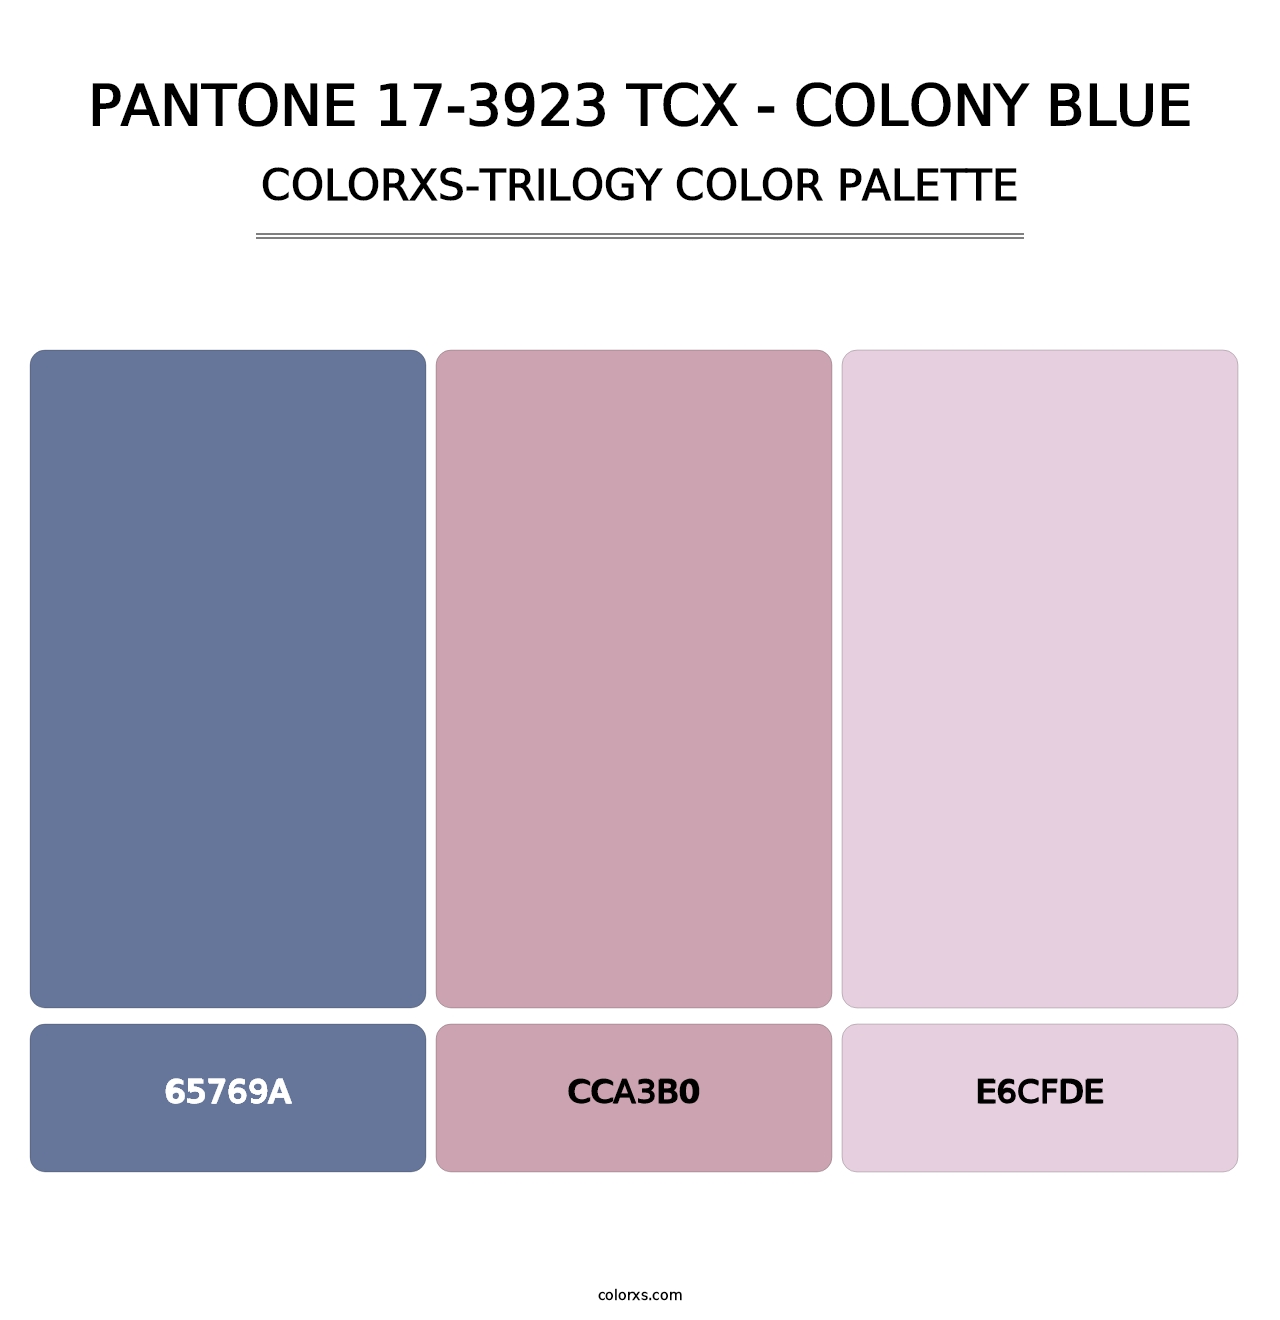 PANTONE 17-3923 TCX - Colony Blue - Colorxs Trilogy Palette